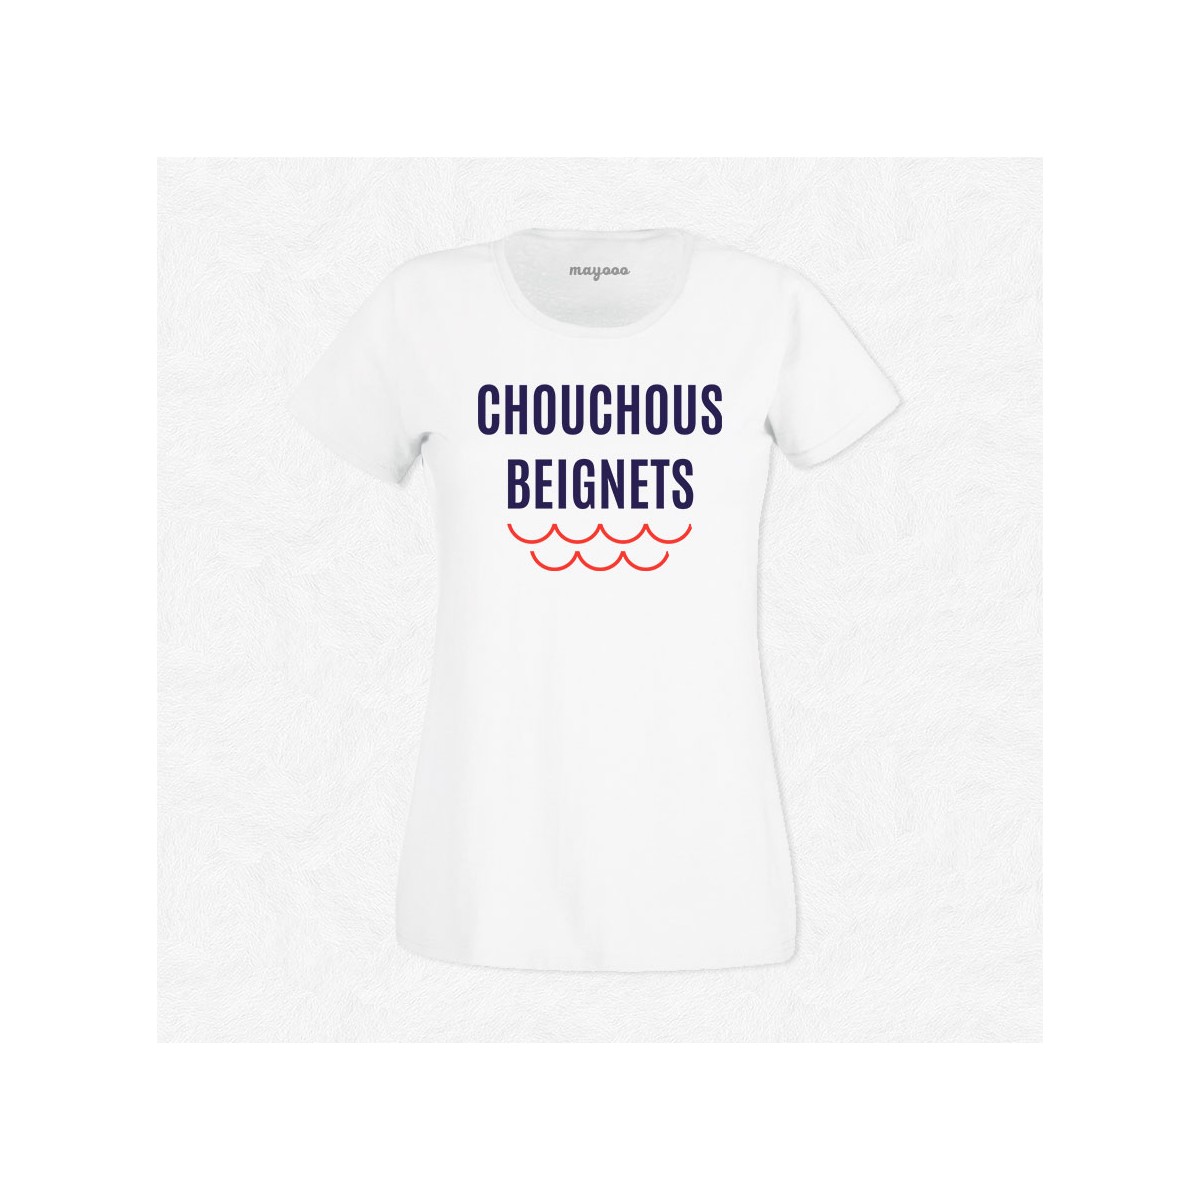 T-shirt Chouchous beignets